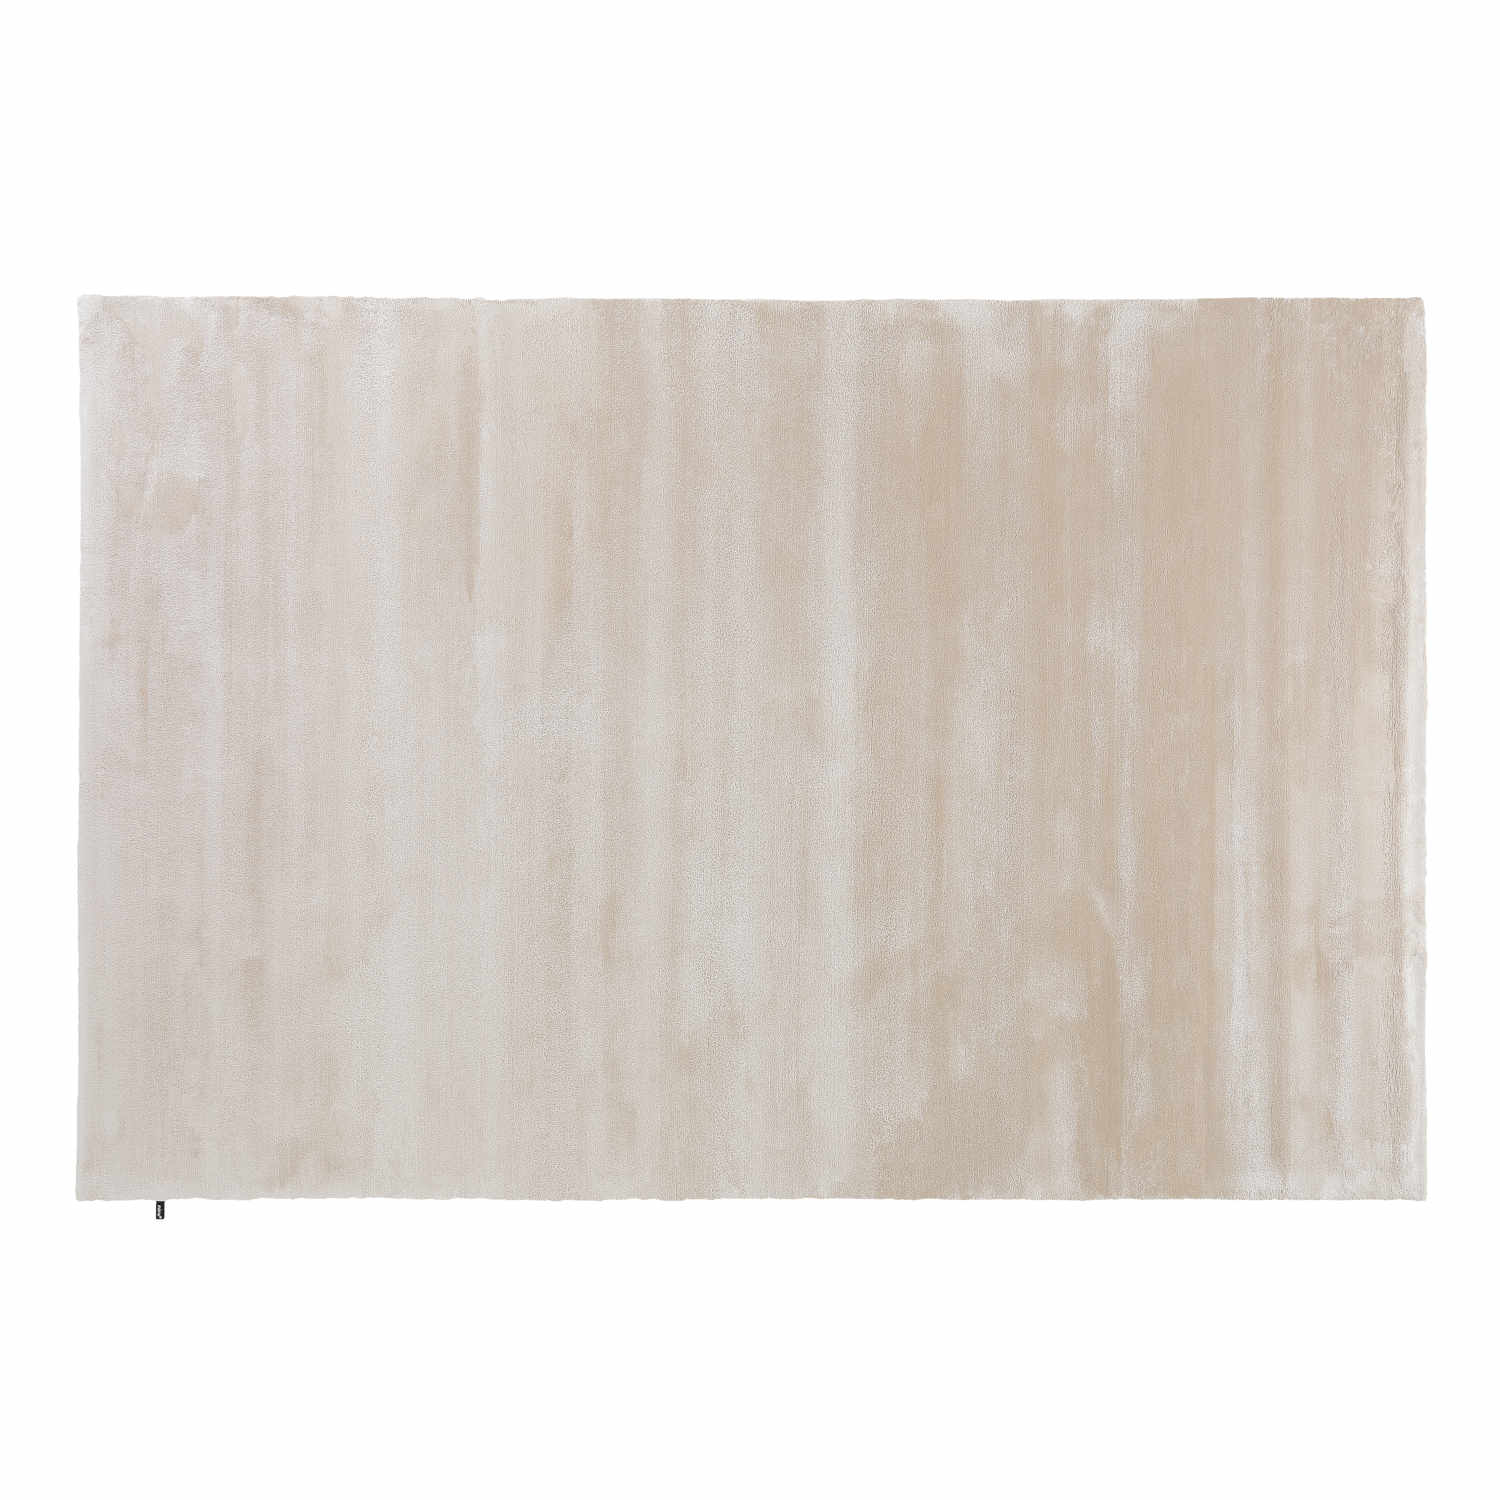 Sublime Teppich, Grösse 200 x 300 cm, Farbe neutral gray von miinu